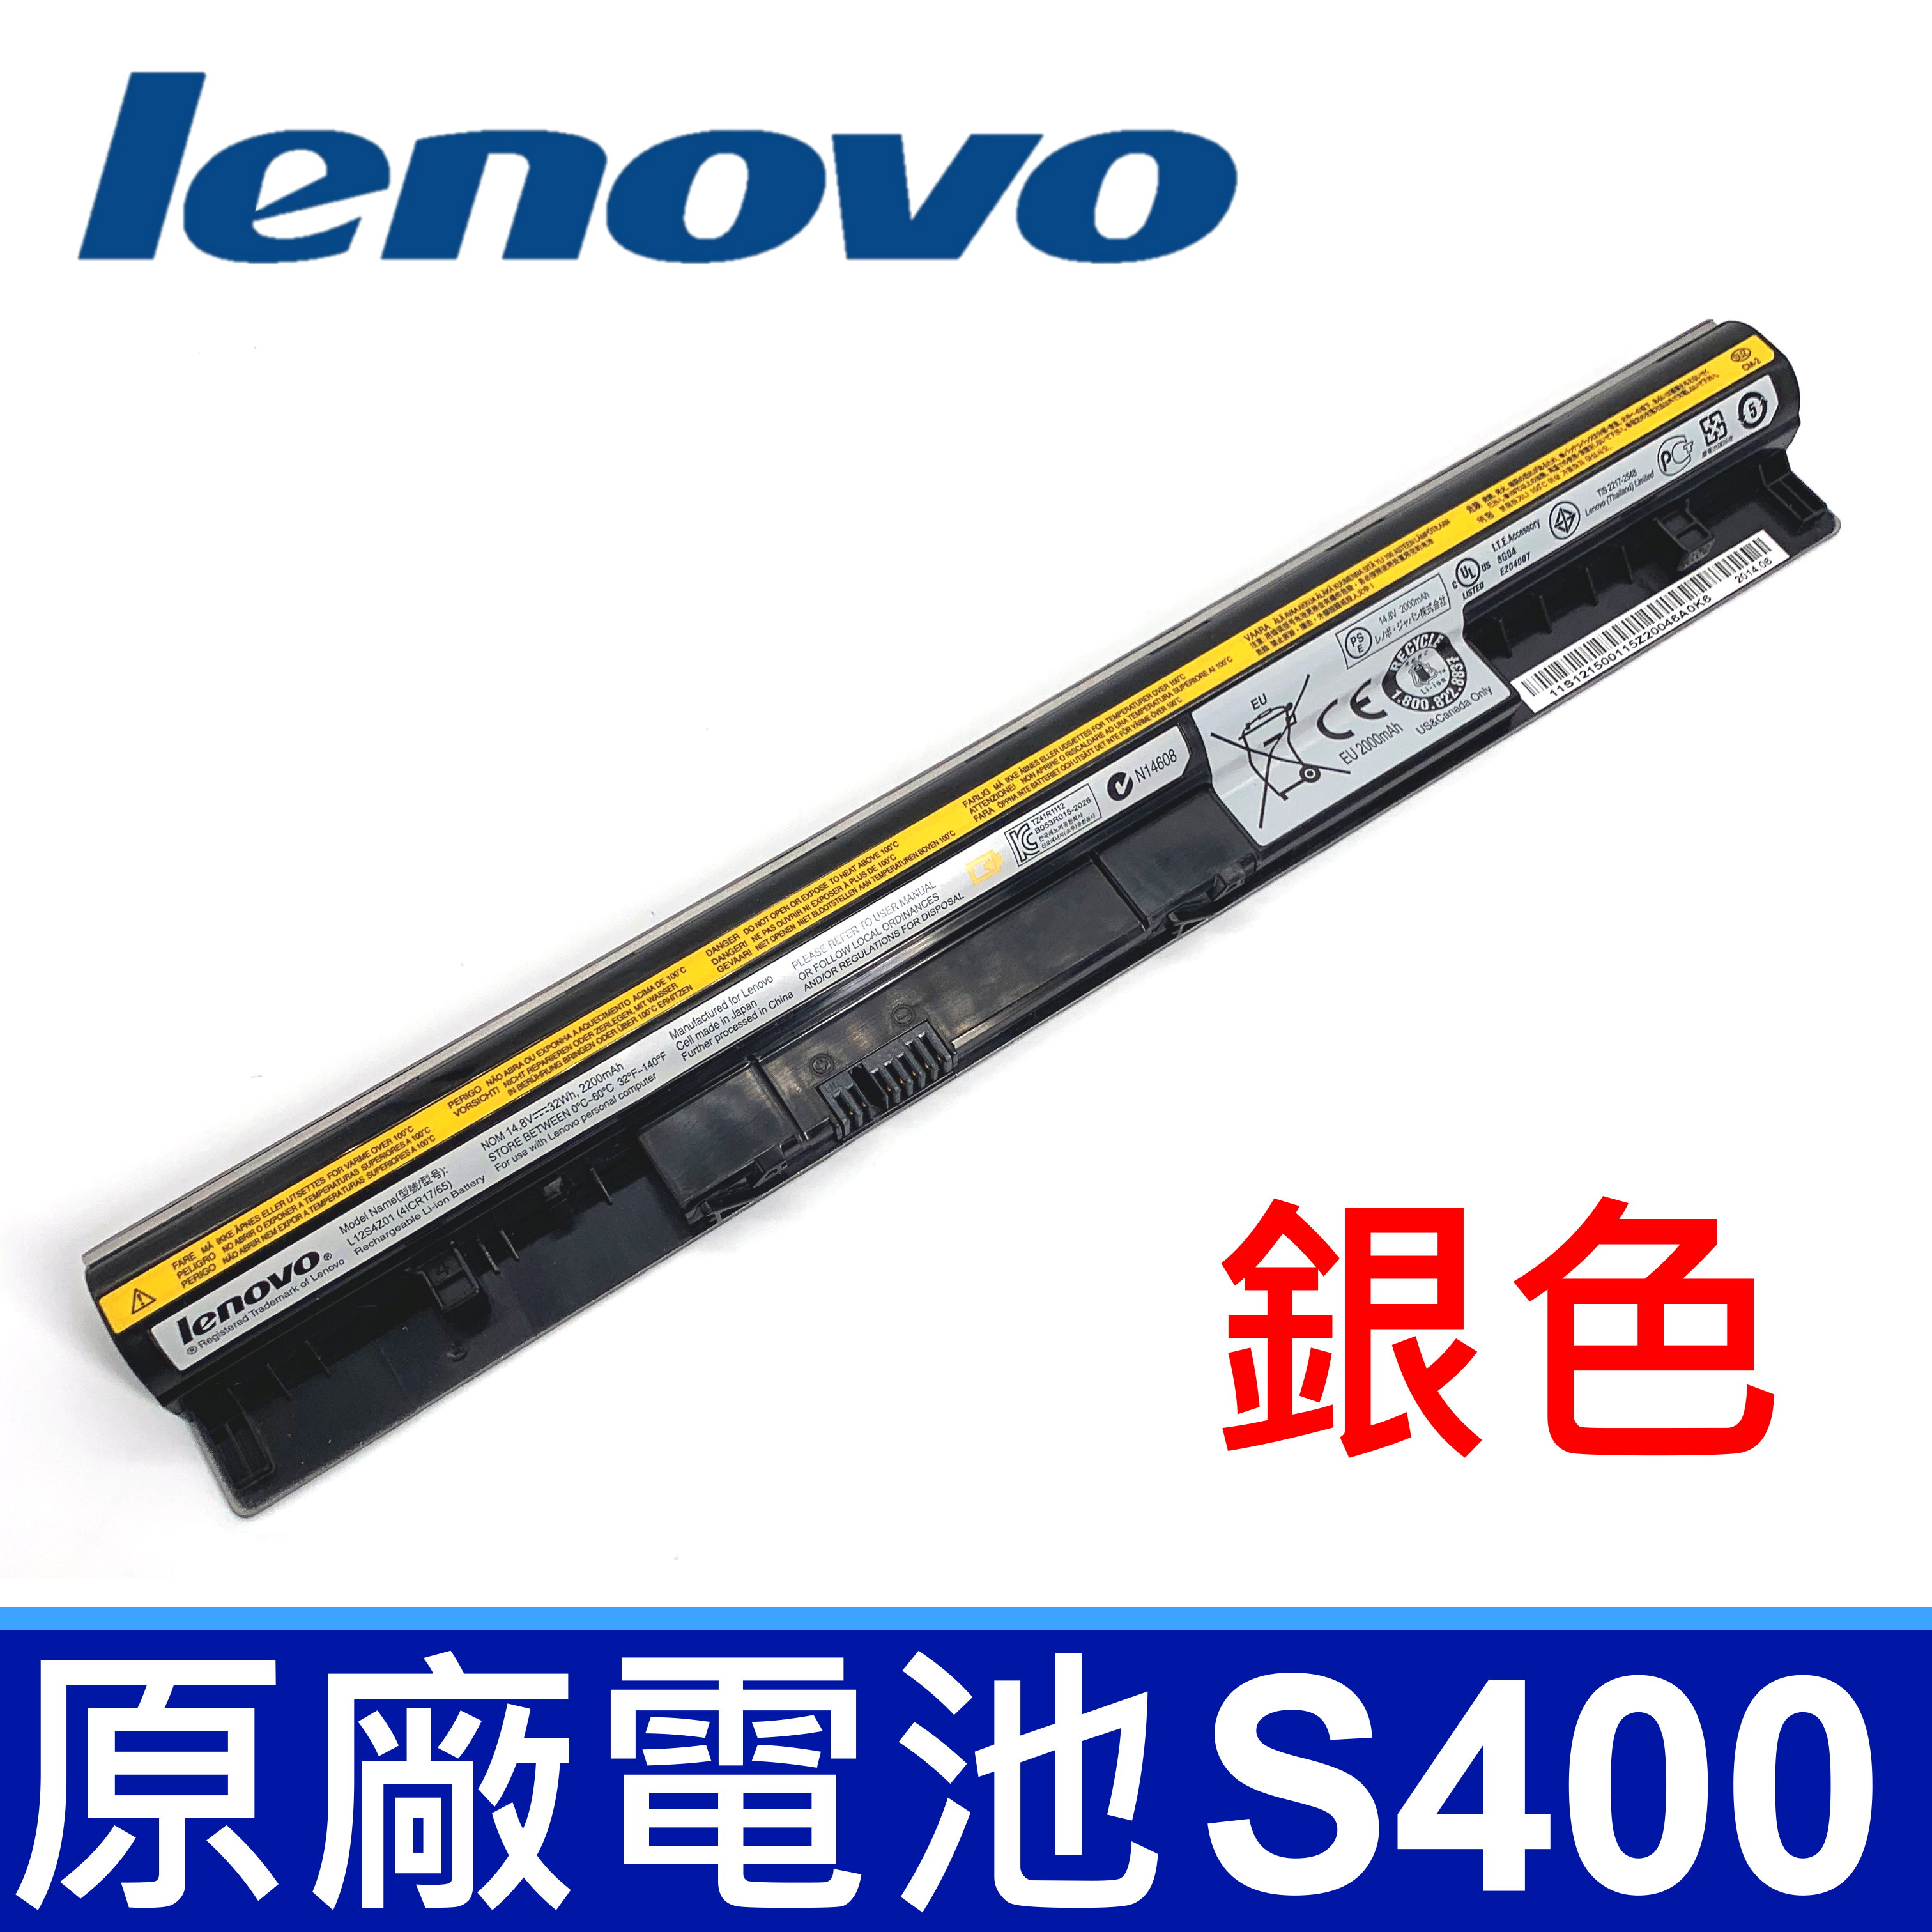 LENOVO S400 4芯 銀色 原廠電池 S300 S310 S400u S405 S410 L12S4Z01 S415 M30 M30-70 M40 M40-70 L12S4L01